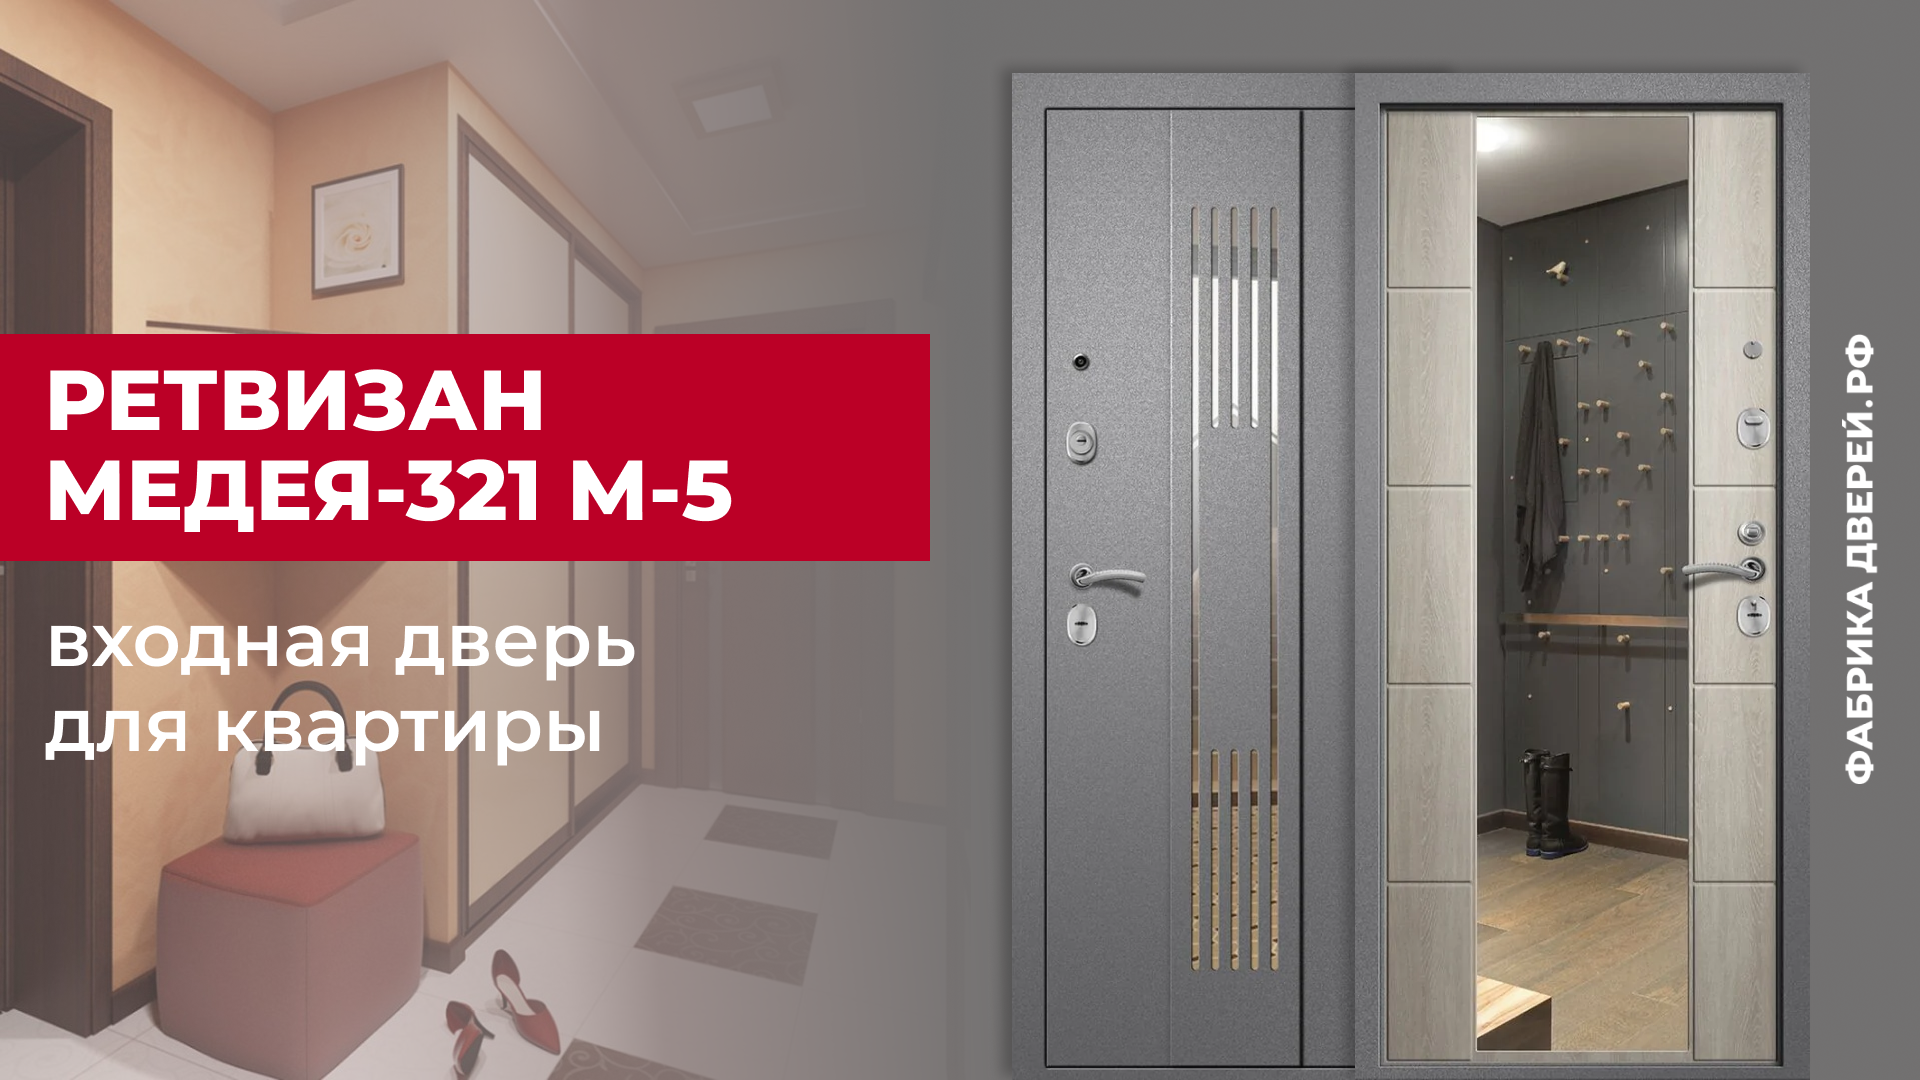 Входная дверь с зеркалом Ретвизан Медея-321 М-5 для квартиры #двери #входныедвери #ремонт #дом #diy